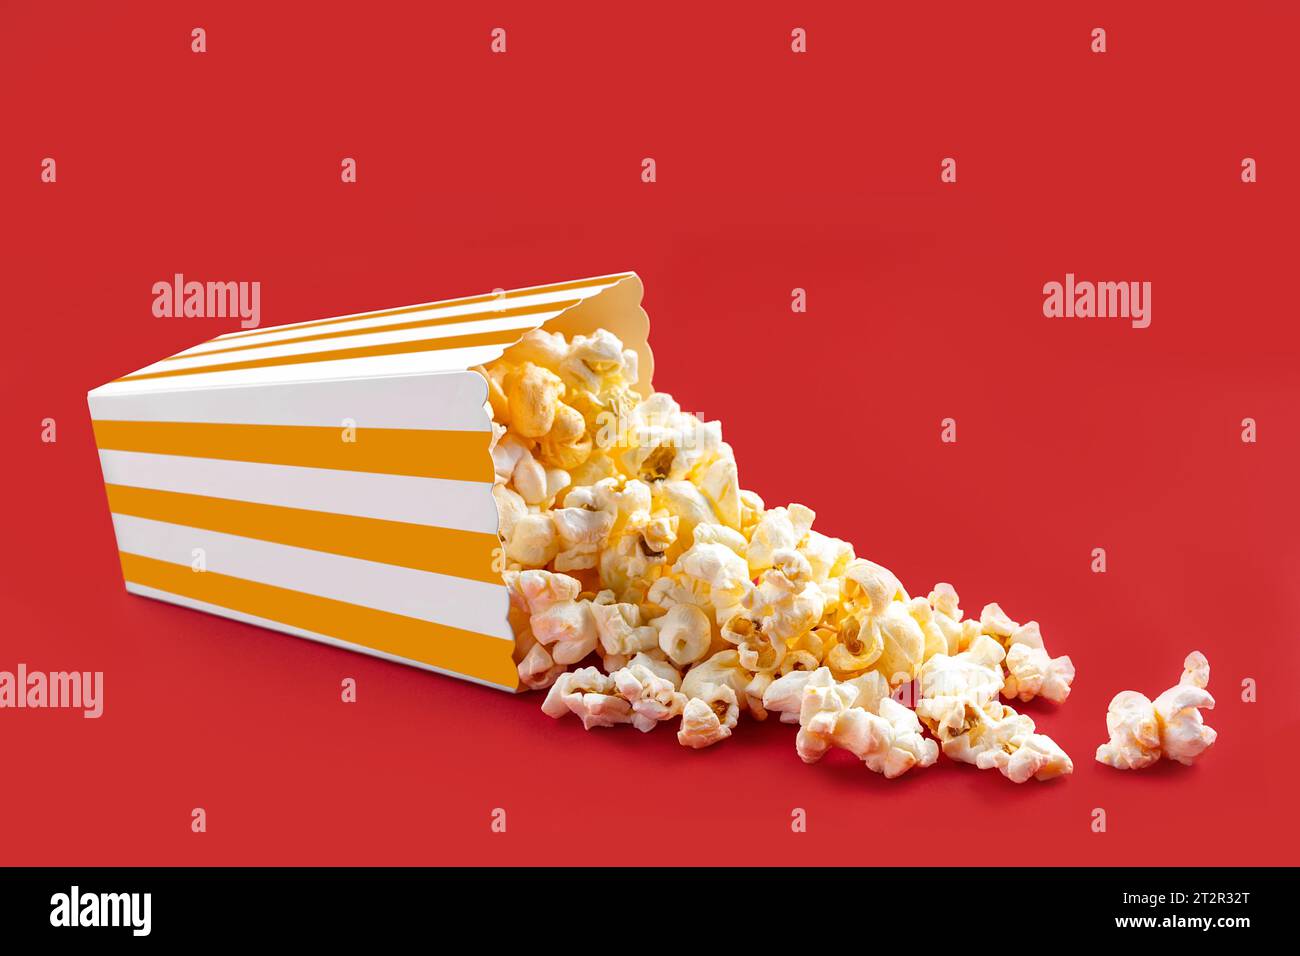 Gustosi popcorn al formaggio che cadono da una scatola di cartone a righe gialle o da un secchio, isolato su sfondo rosso. Dispersione di semi di popcorn. Fast food, snack. Foto Stock